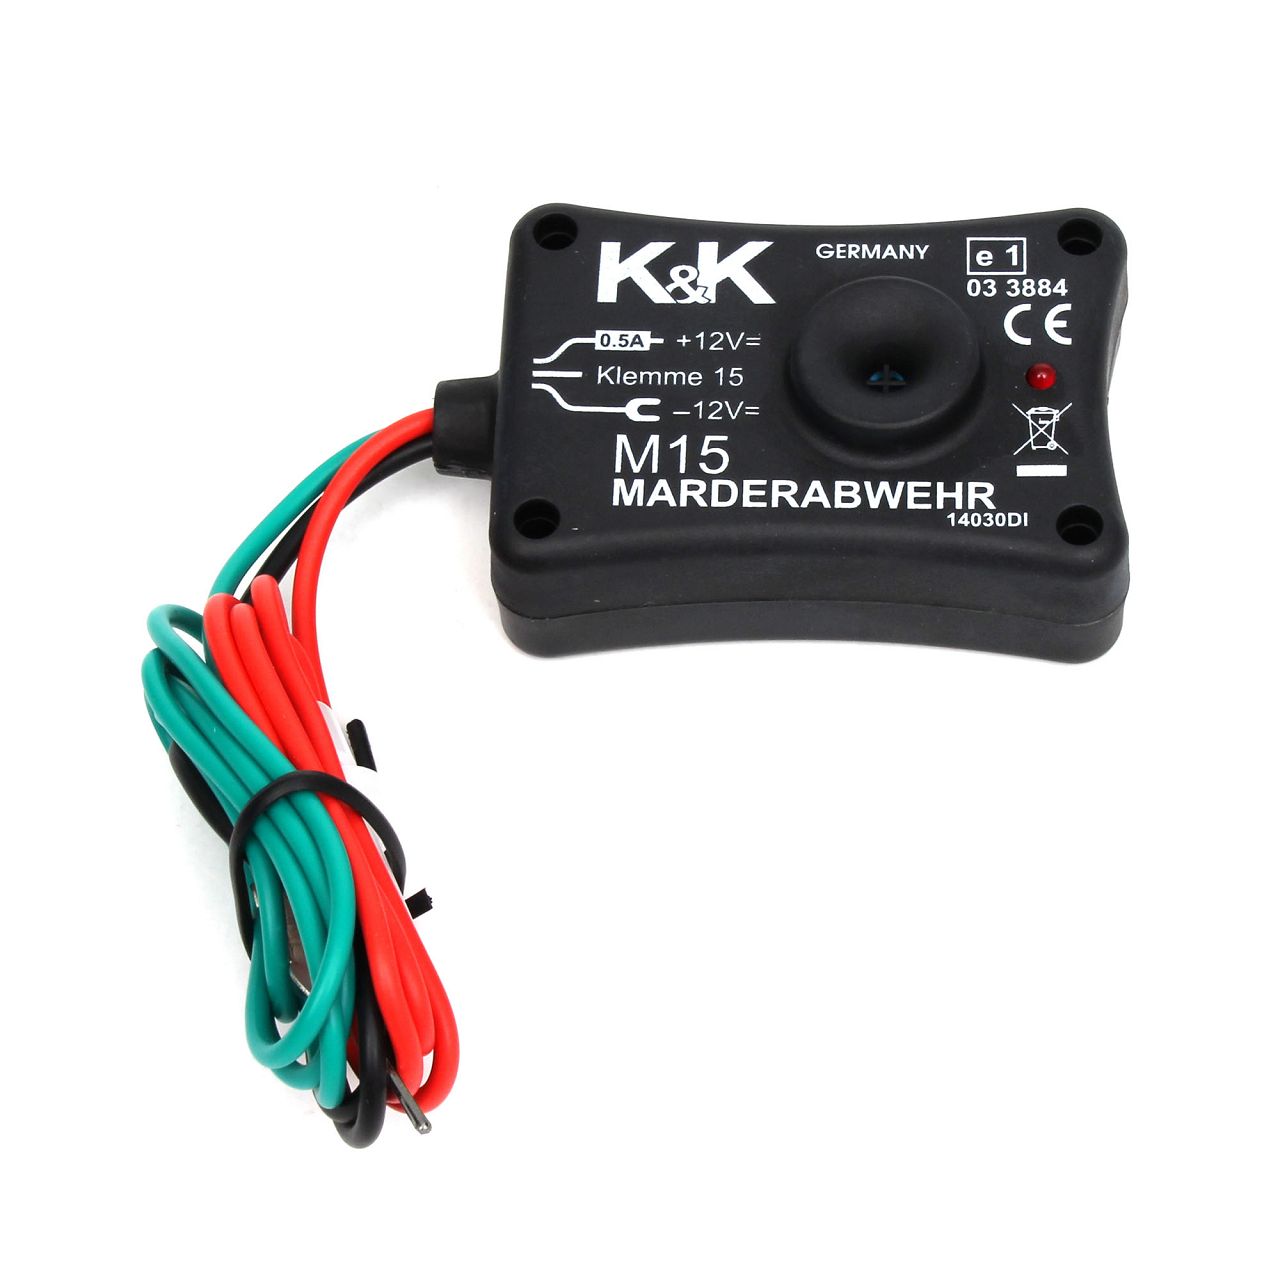 K&K Marderschutz M15 Ultraschallgerät 12kHz 85 dB(A) + Duftmarkenentferner 500ml